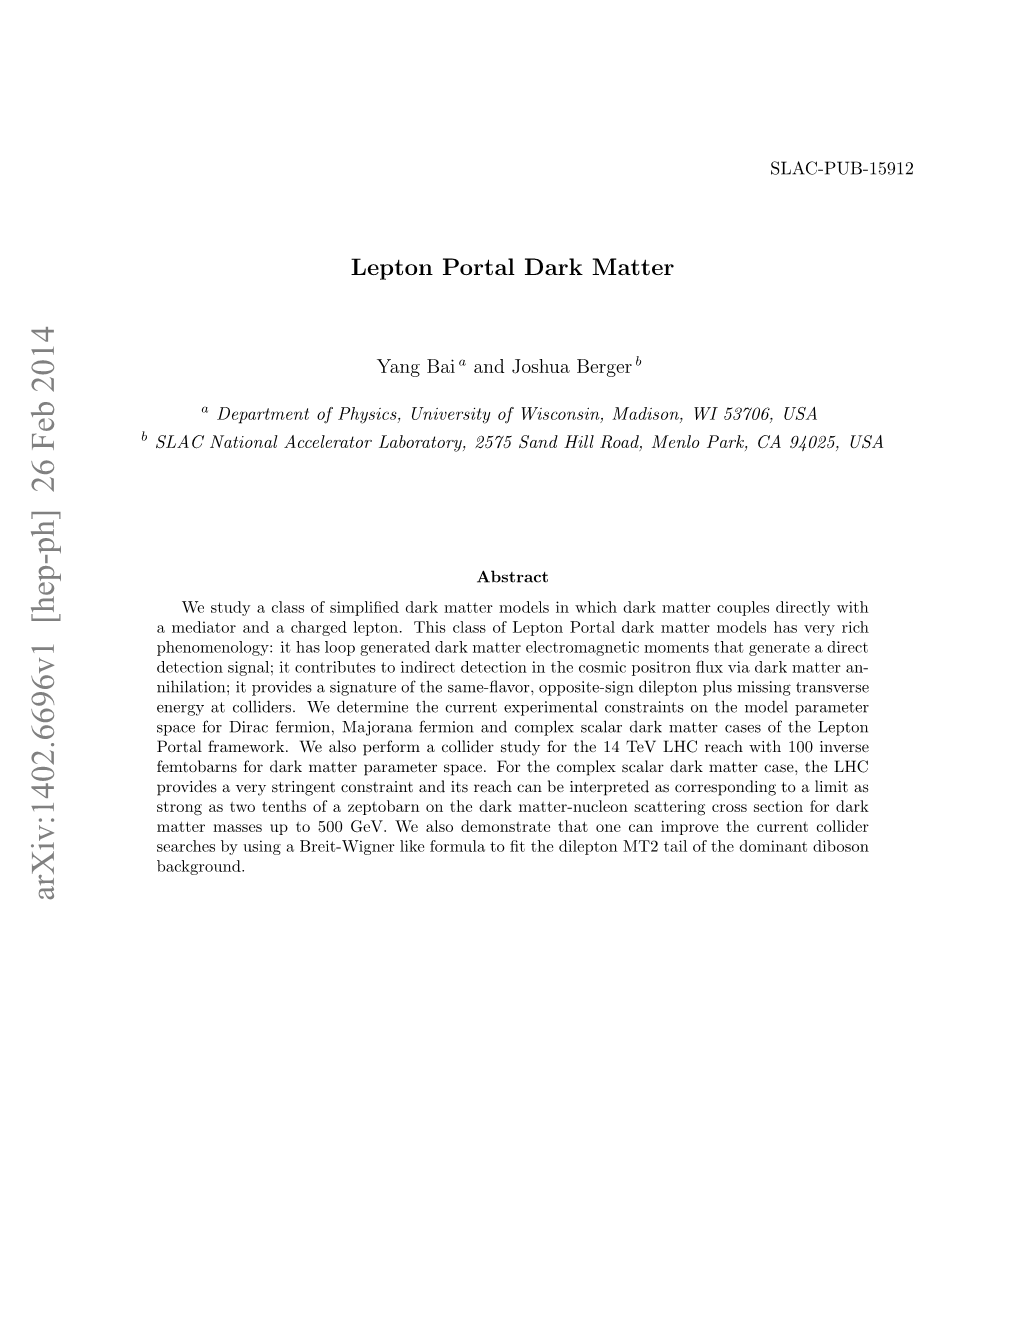 Lepton Portal Dark Matter Models